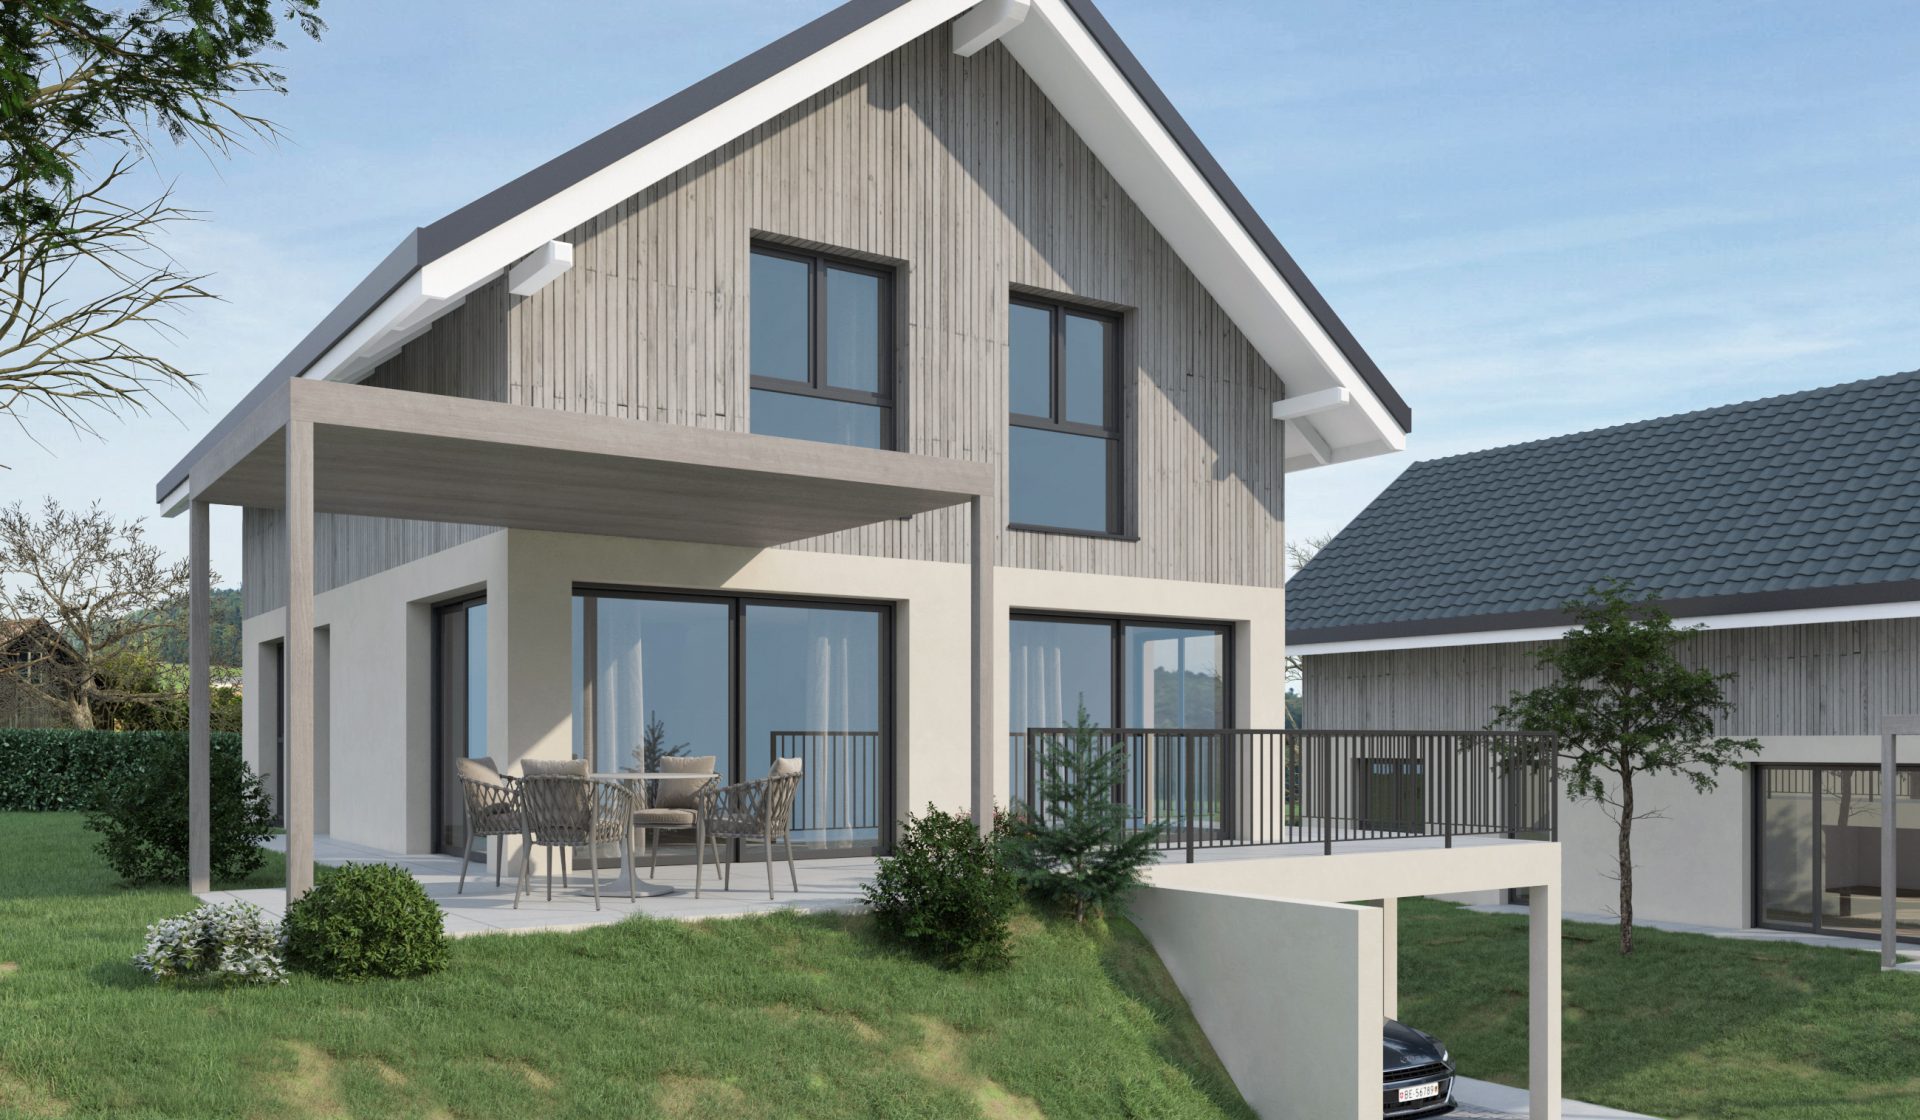 2 Einfamilienhäuser Grasswil Visualisierungen / Architektur Visualisierung | AVOO DESIGN Solothurn